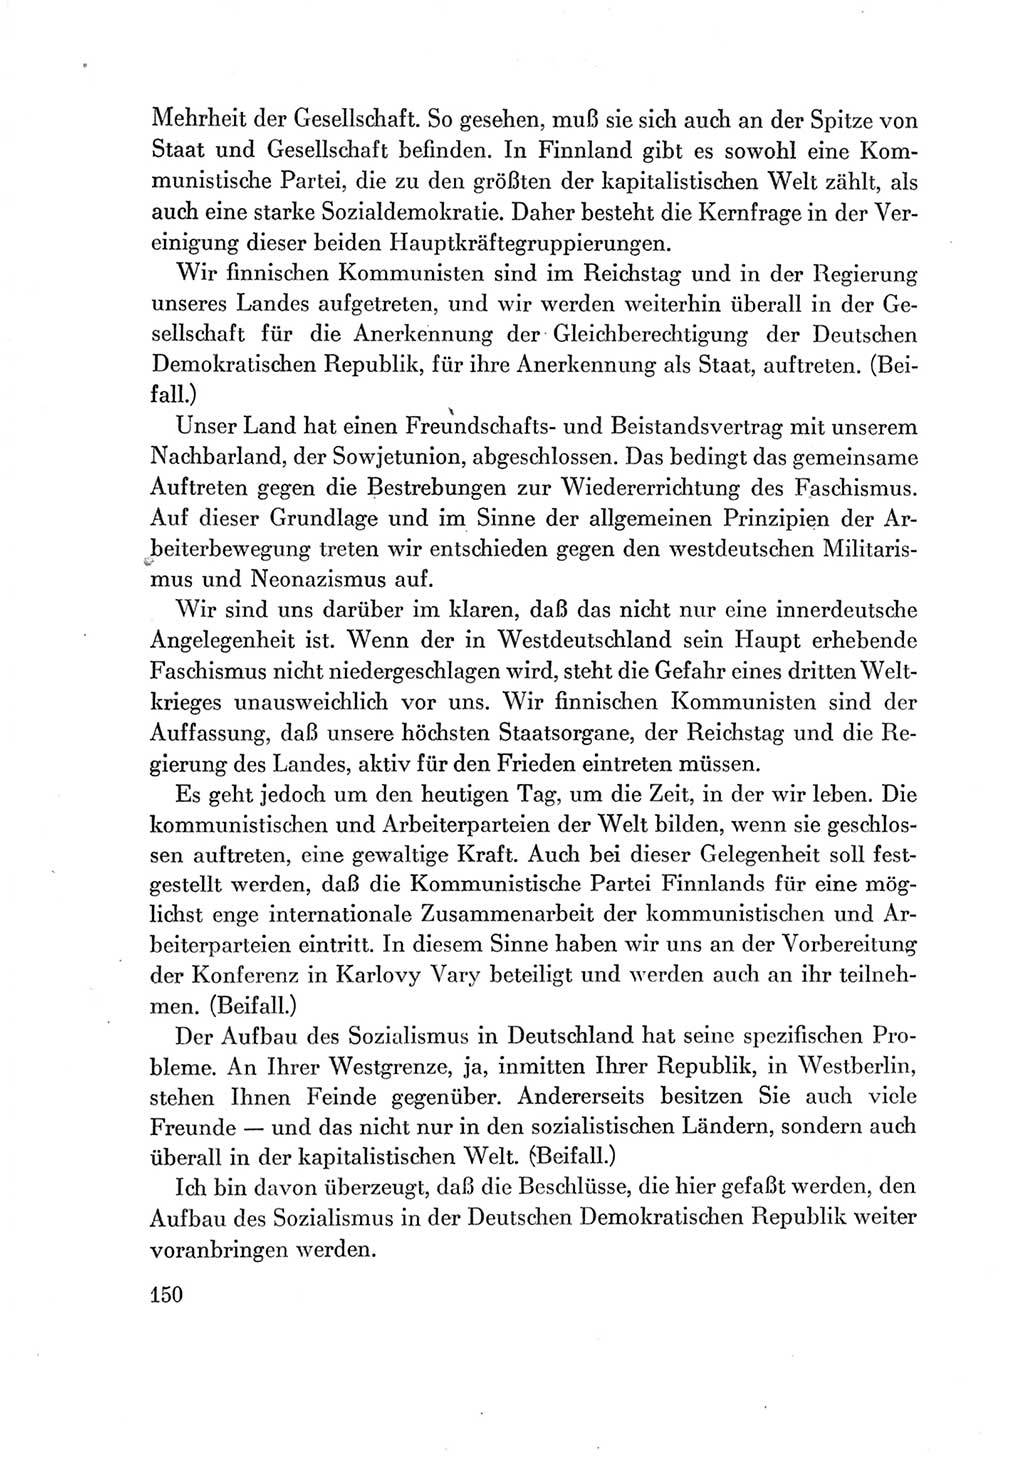 Protokoll der Verhandlungen des Ⅶ. Parteitages der Sozialistischen Einheitspartei Deutschlands (SED) [Deutsche Demokratische Republik (DDR)] 1967, Band Ⅱ, Seite 150 (Prot. Verh. Ⅶ. PT SED DDR 1967, Bd. Ⅱ, S. 150)